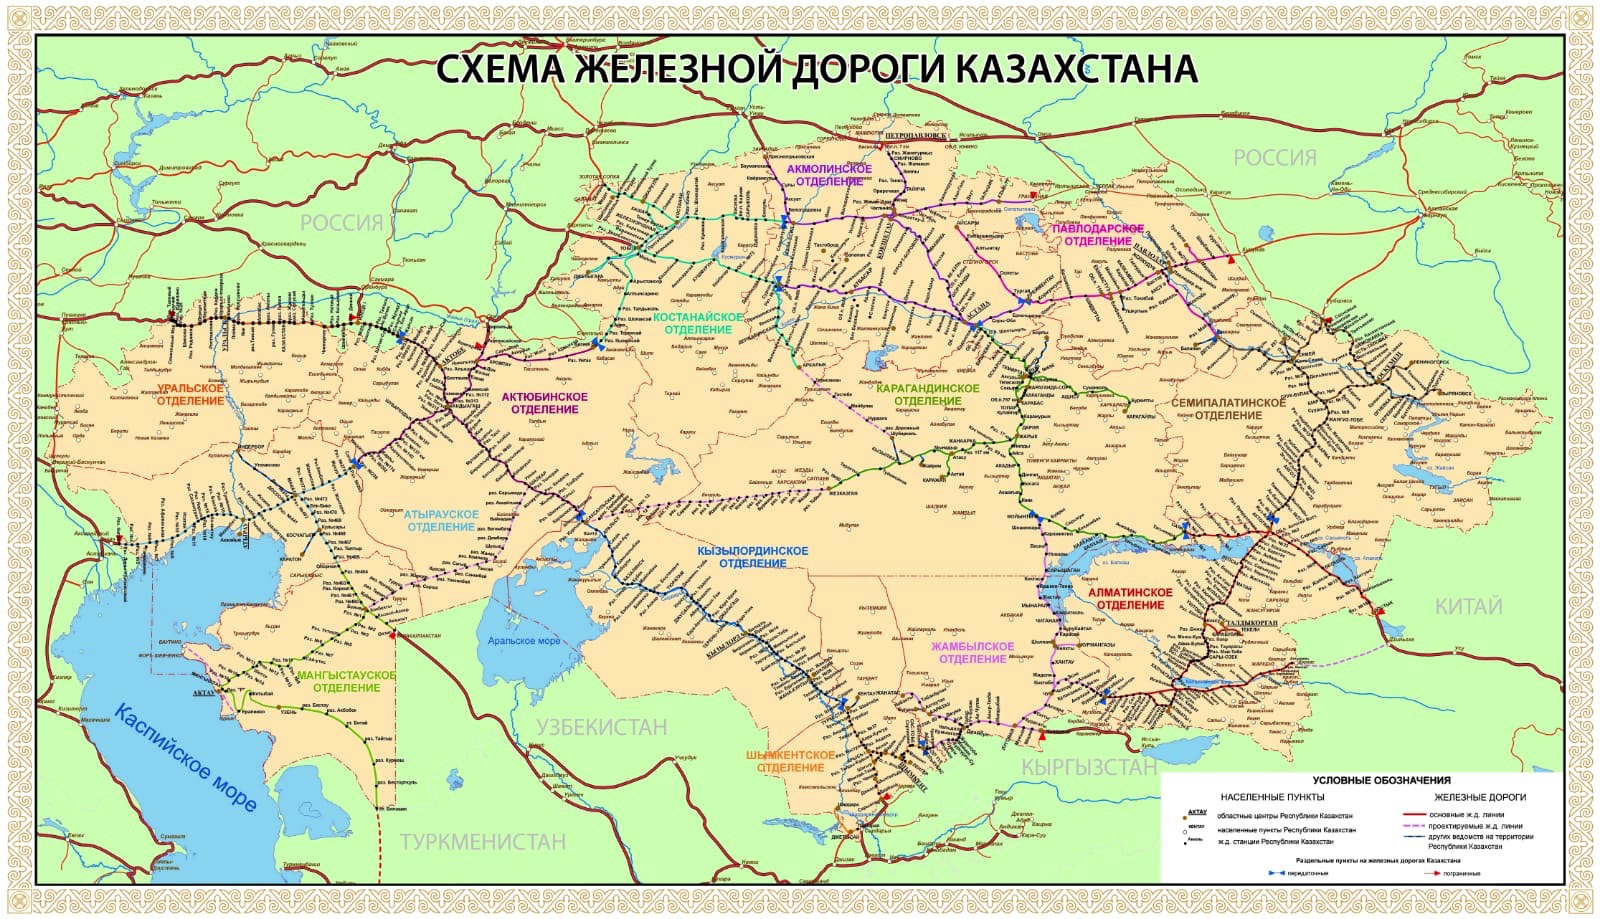 Kazakistan Demiryolu Haritası - Rusça